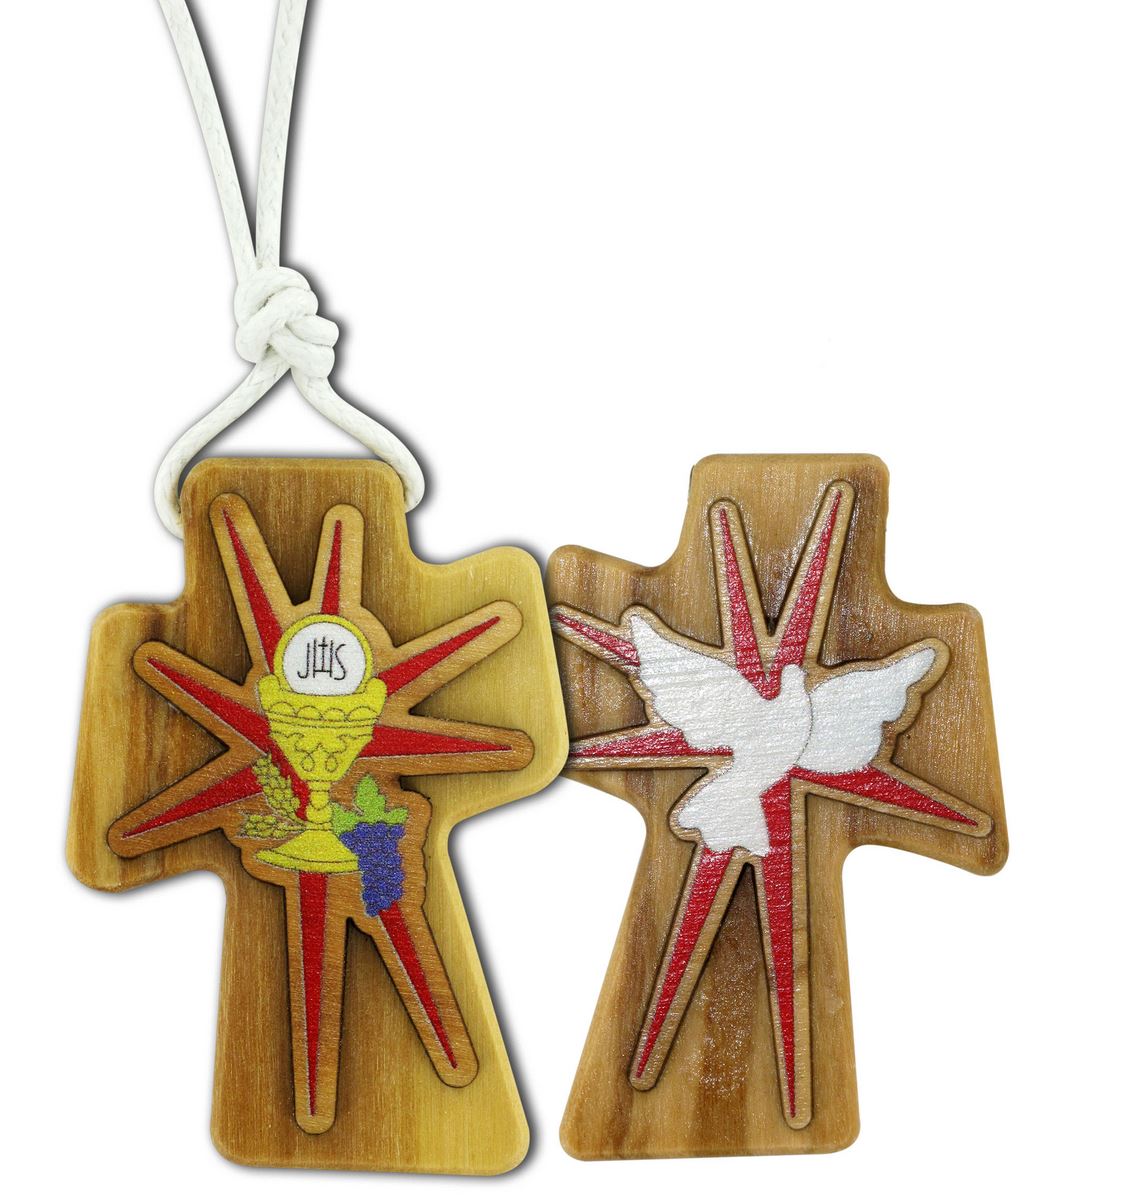 bomboniera comunione: croce in legno d'ulivo con i simboli della cresima e comunione - 4,7 cm